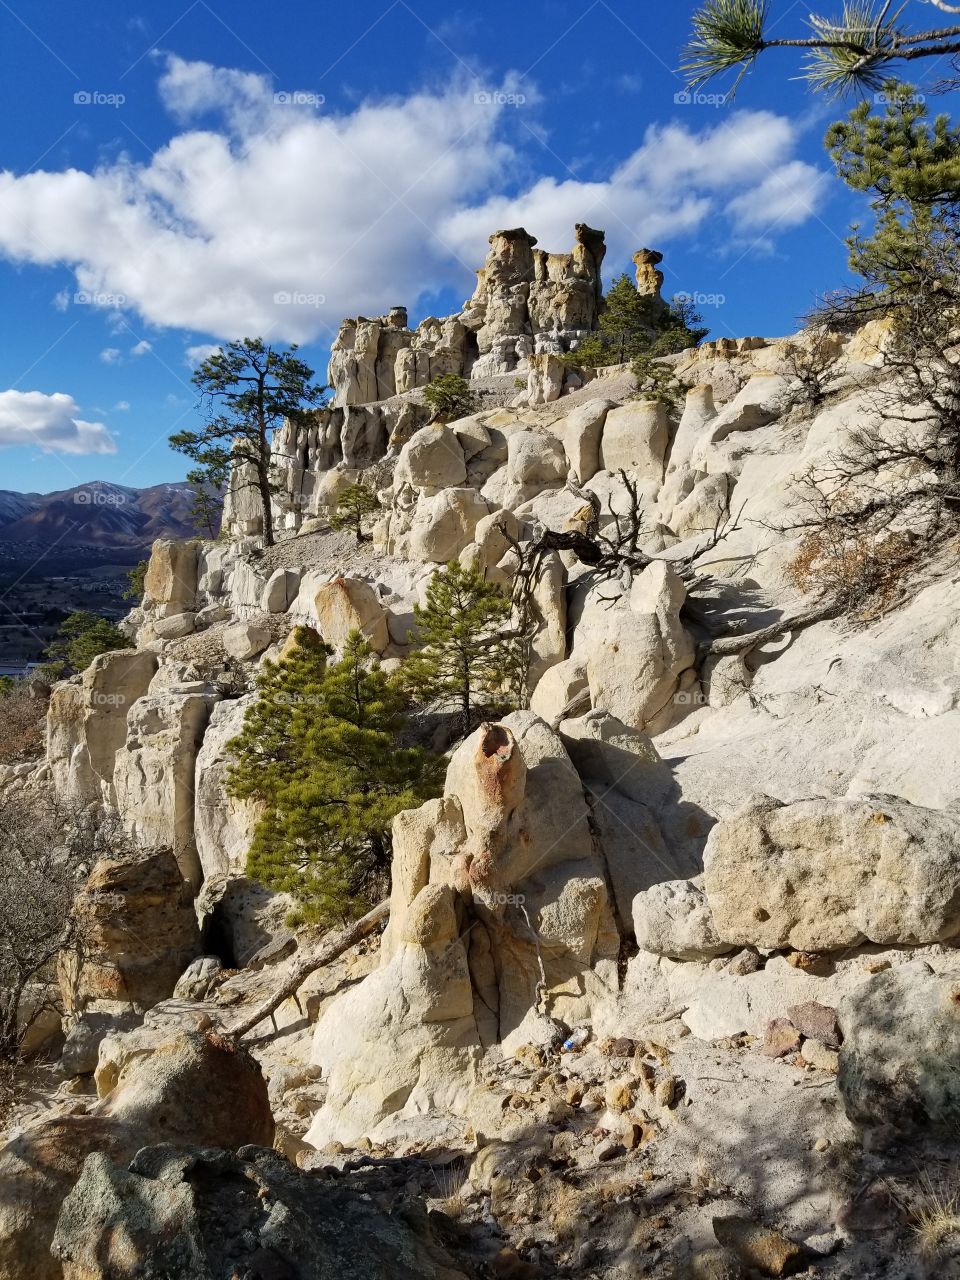 Pulpit Rock Park in Colorado Springs